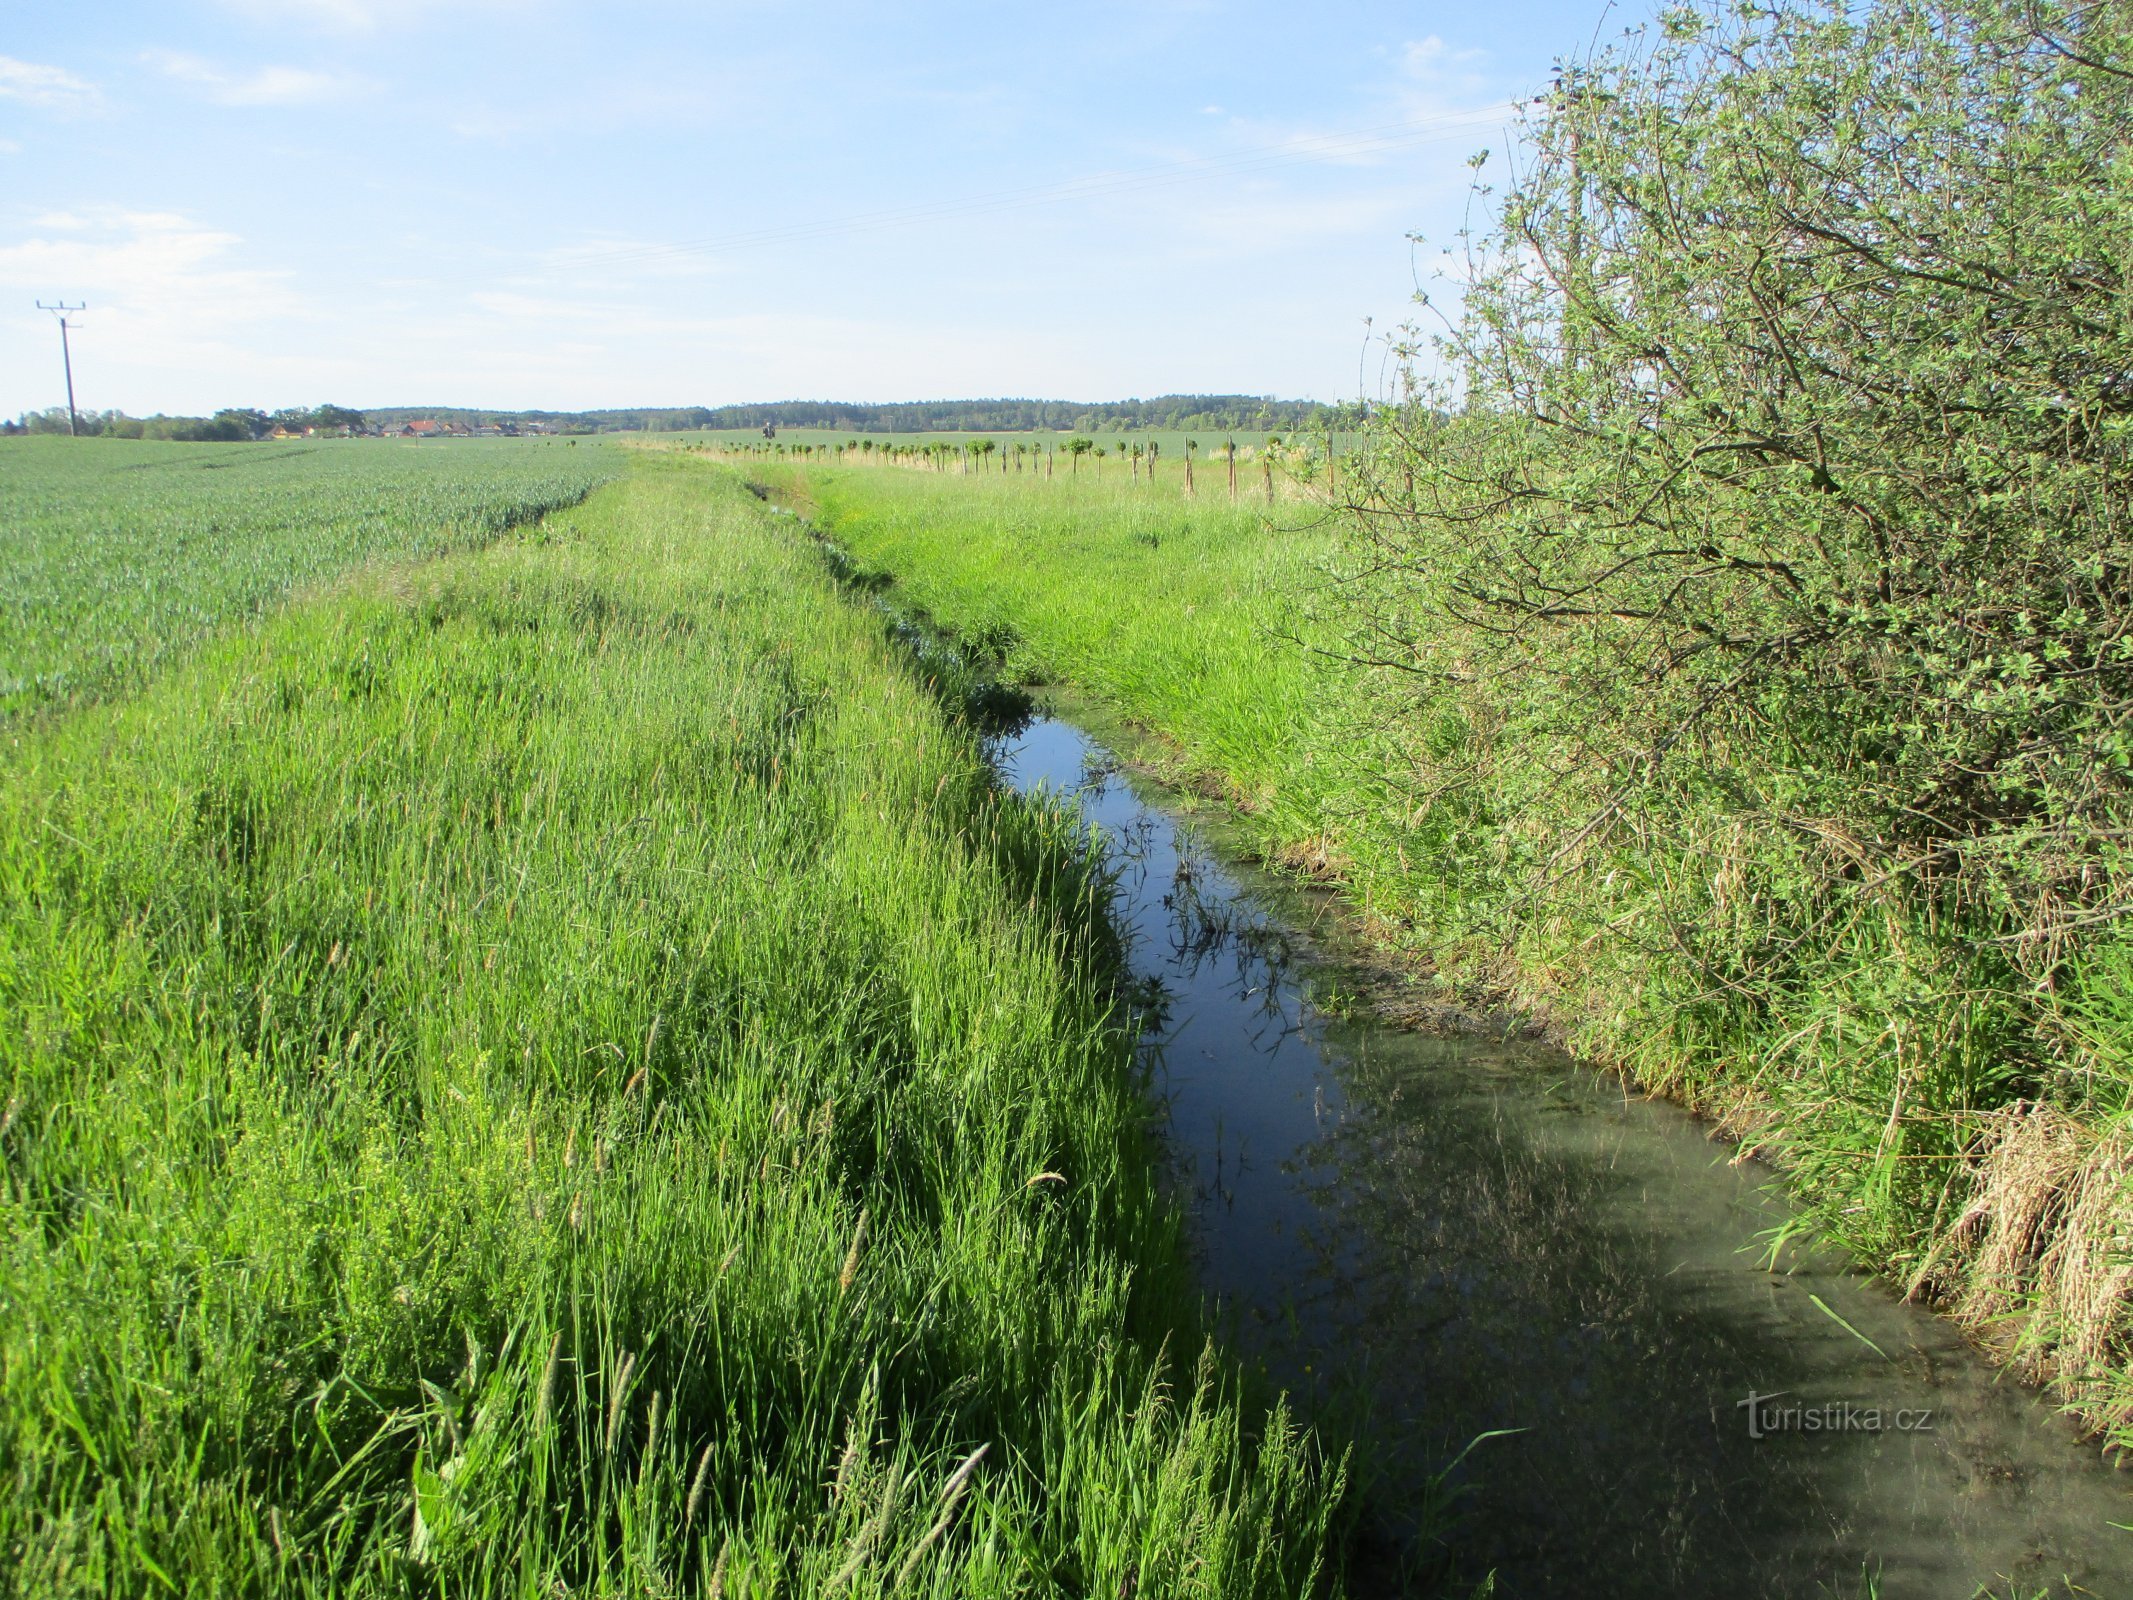 自行车道旁的 Libranticky 溪流 (Černilov, 22.5.2020/XNUMX/XNUMX)